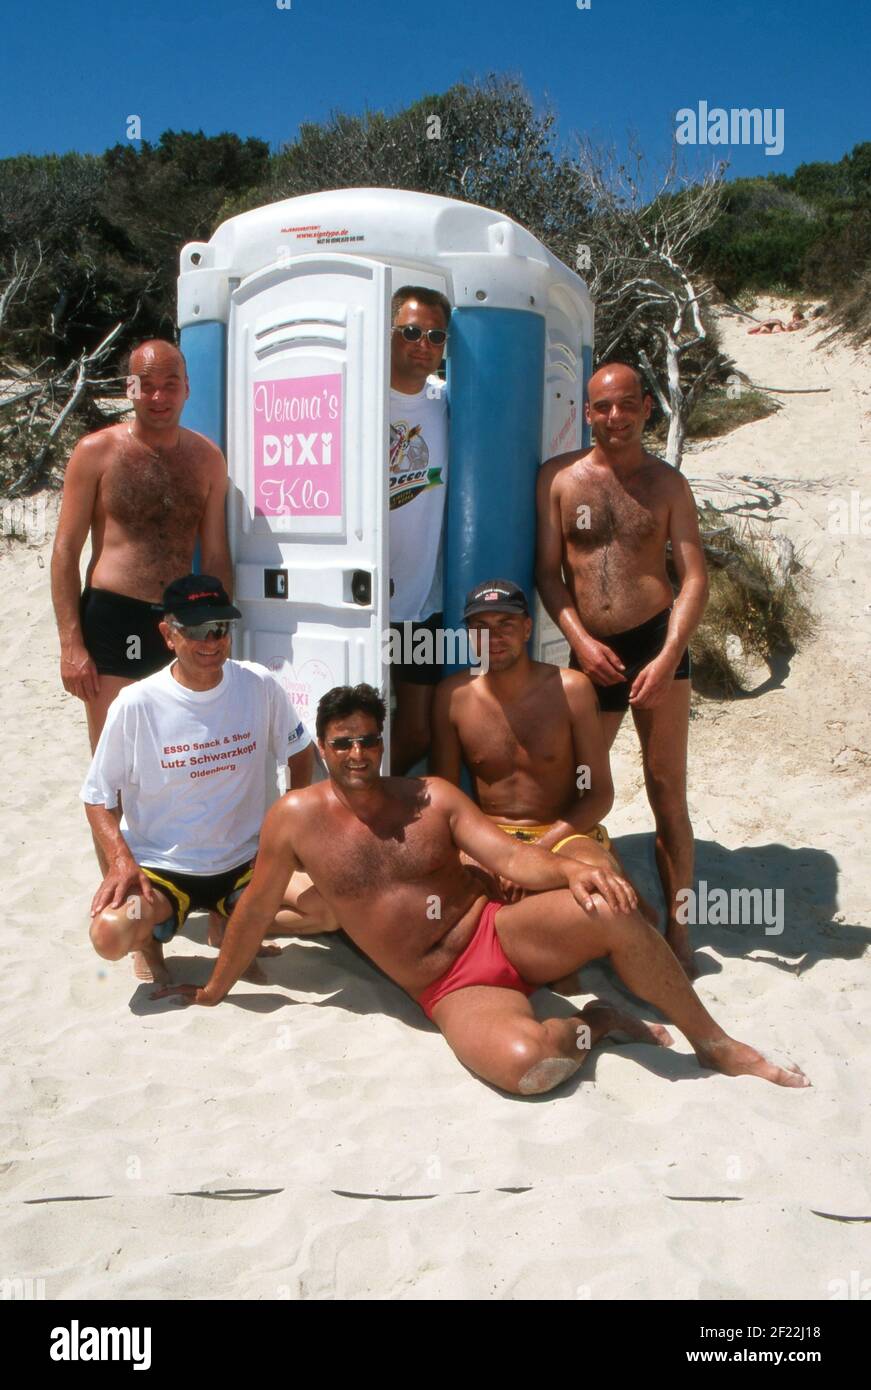 Touristen bezahlen für die Nutzung vom Dixi klo vom Auftirtt von Verona Feldbusch bei 'Big Brother' als Touristenattraktion am Strand von Mallorca, Spanien 2000. Foto Stock